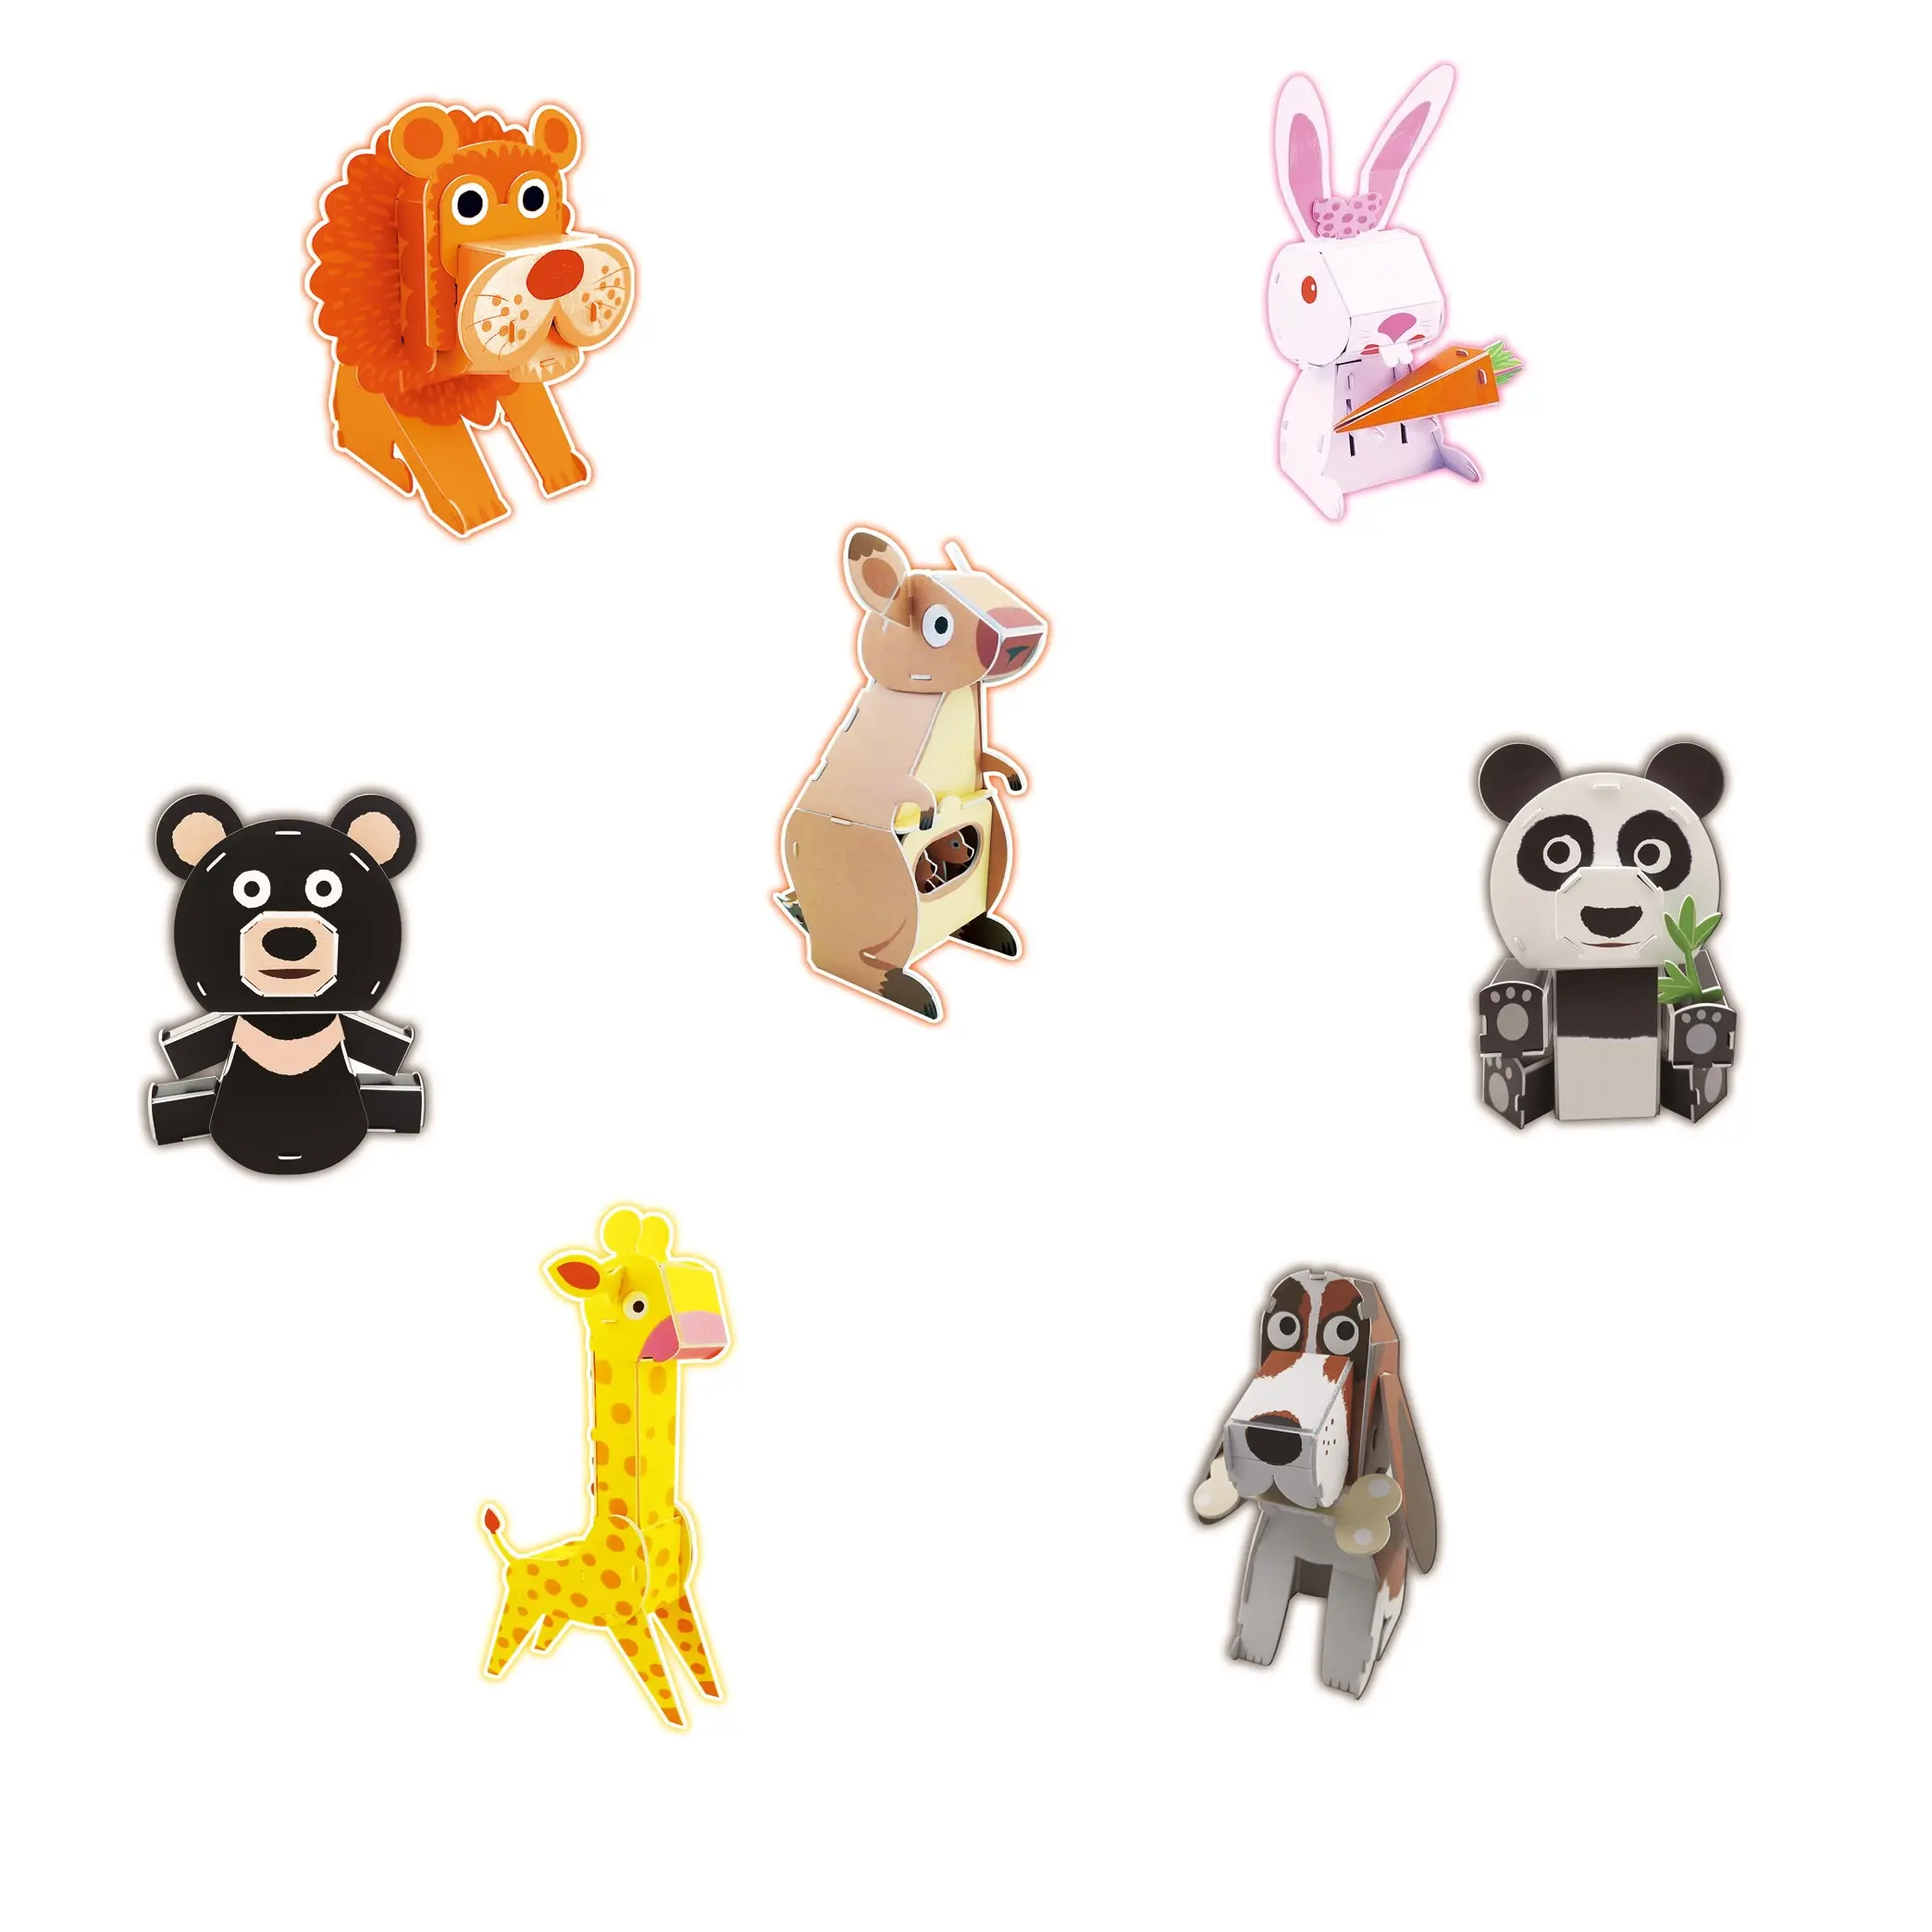 売れ筋DIYキッズおもちゃ教育玩具ハンズオン能力動物家の装飾DIY組み立て紙モデルおもちゃ動物3D紙パズル